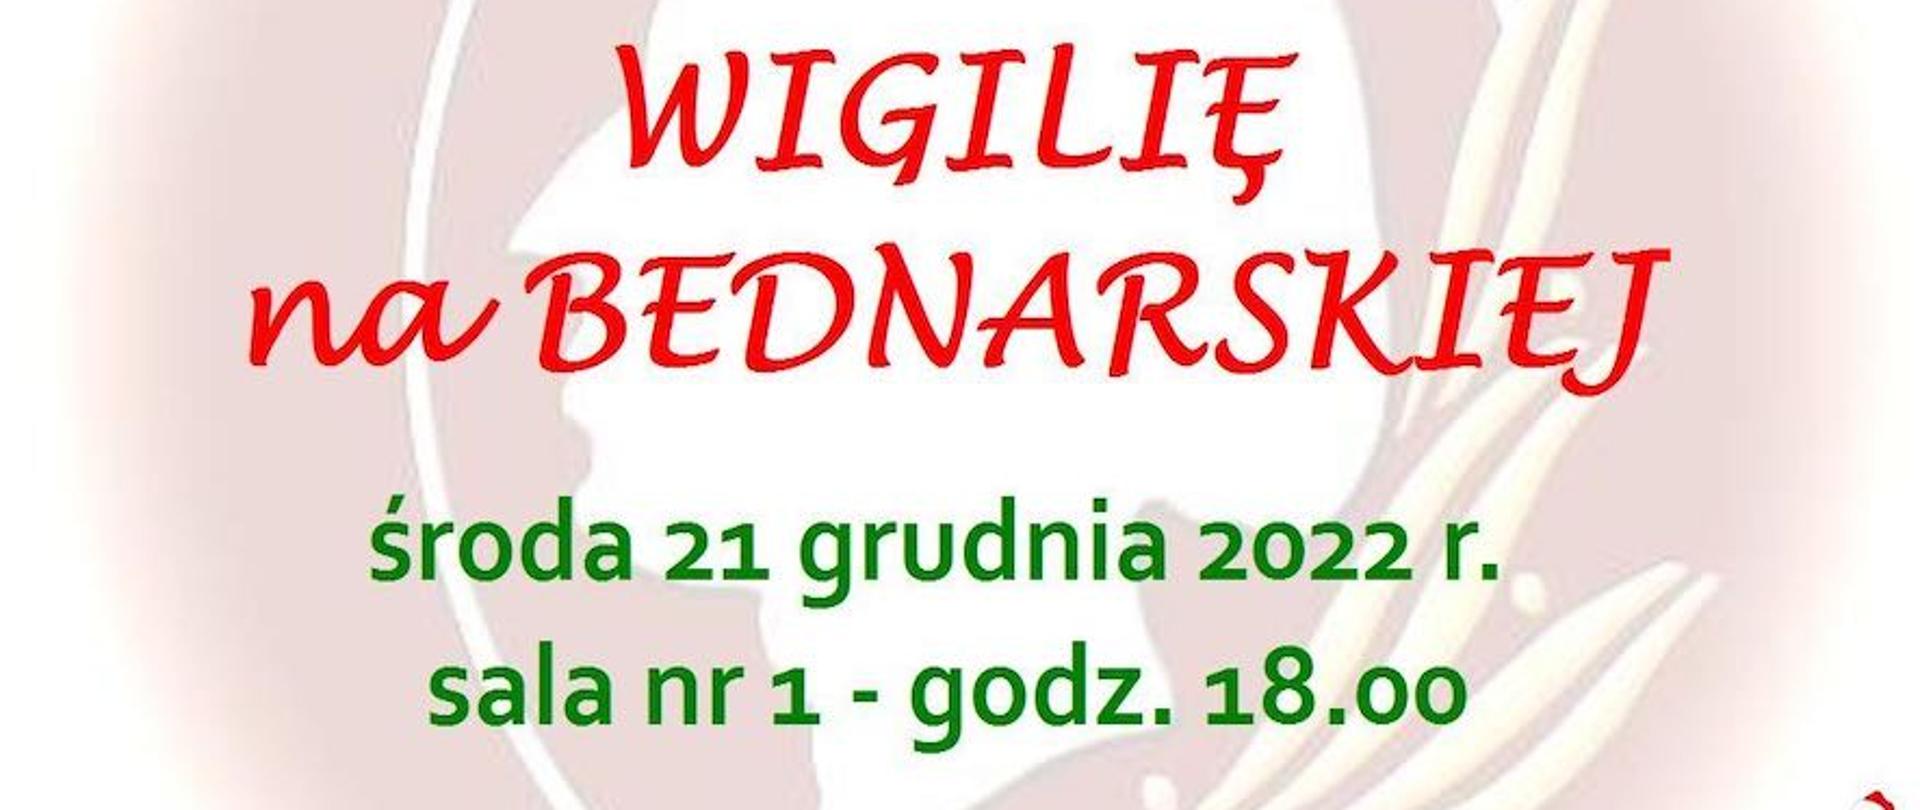 Afisz - Rada Rodziców zaprasza na Wigilię na Bednarskiej - 21 grudnia 2022 r. o godz. 18, sala 1